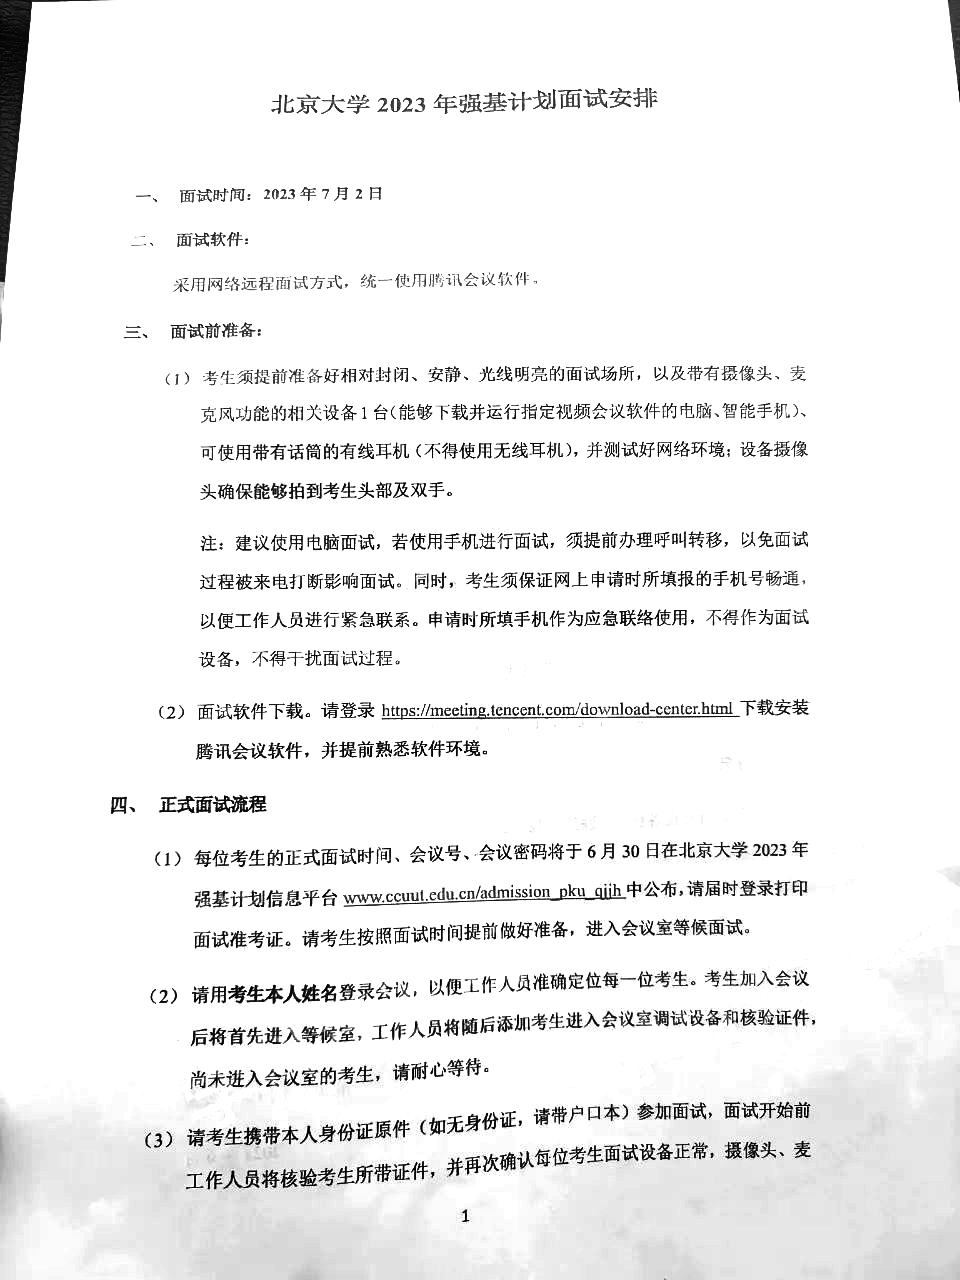 北京大学2023年强基计划校考安排